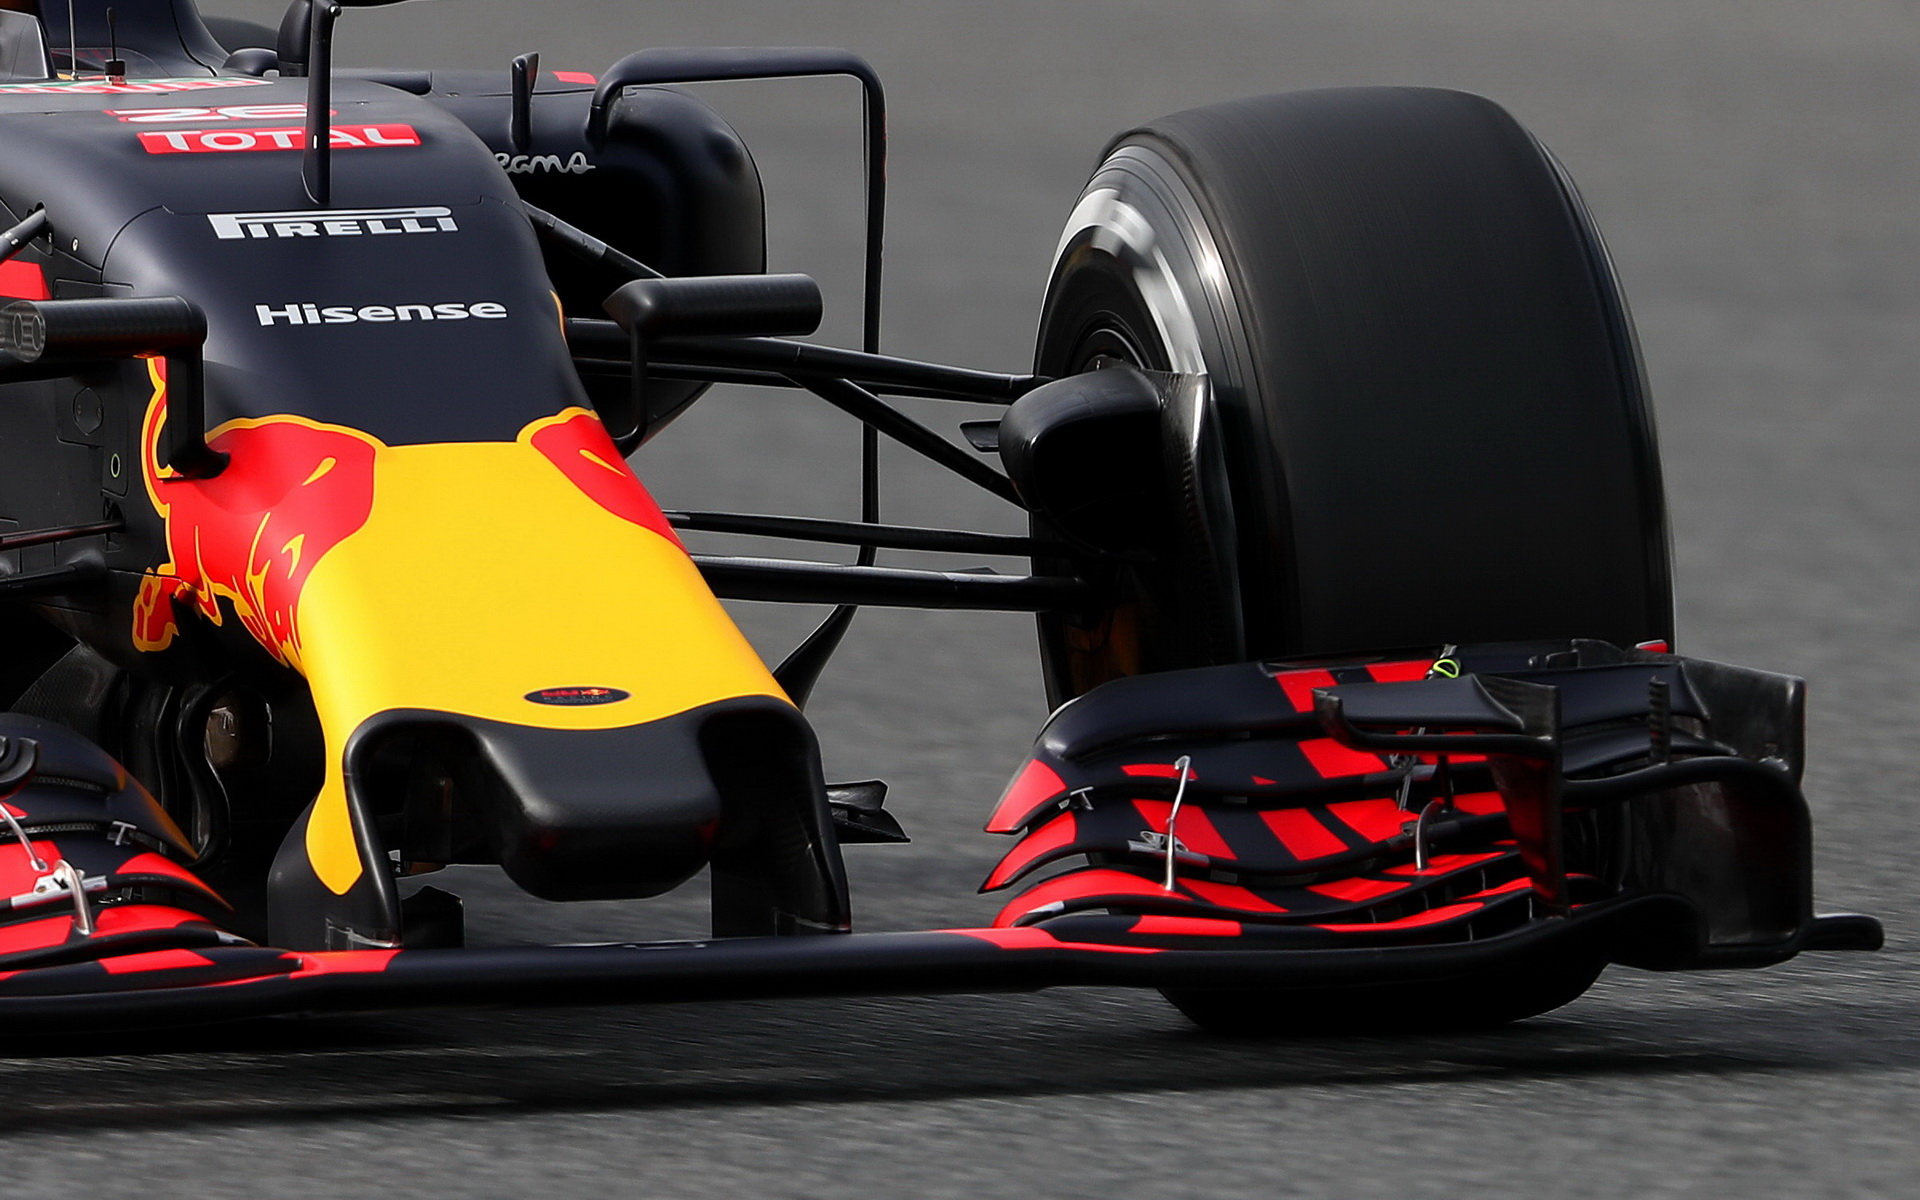 Přední křídlo vozu Red Bull RB12 - Renault